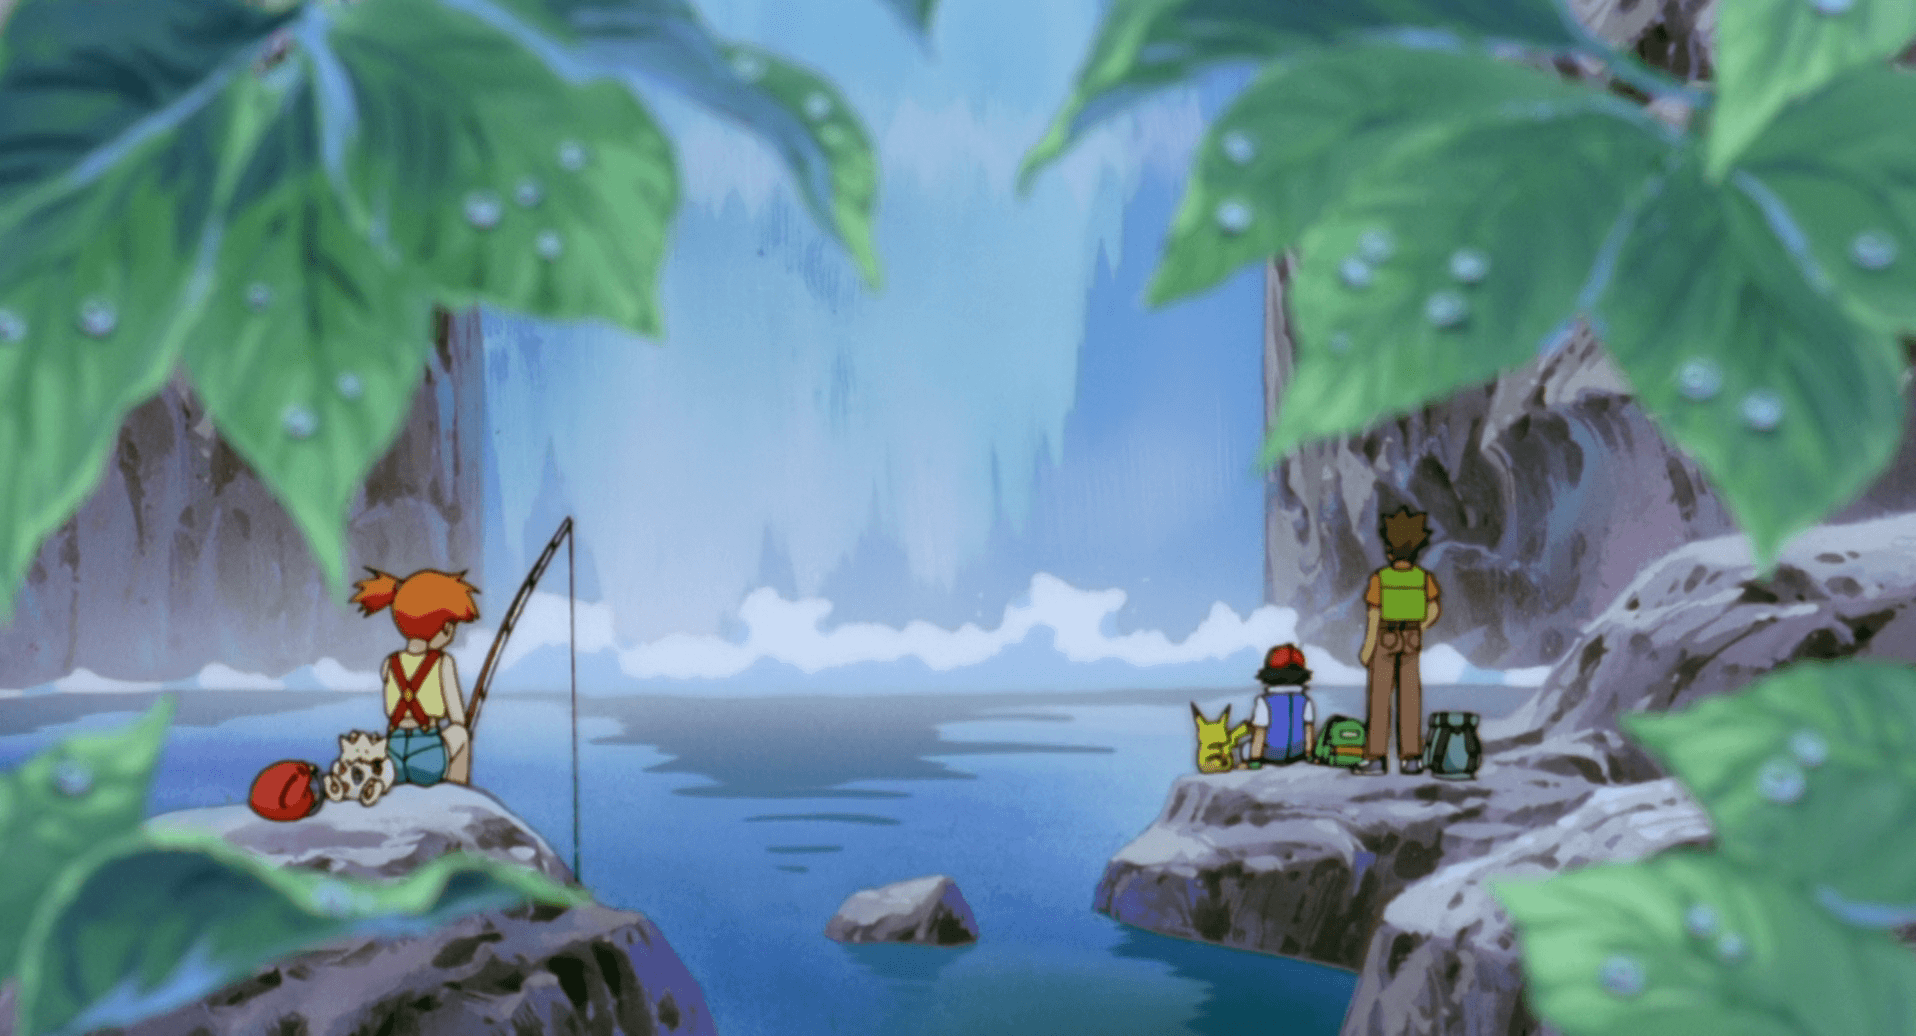 Misty (Pokémon) HD Wallpaper and Background Image